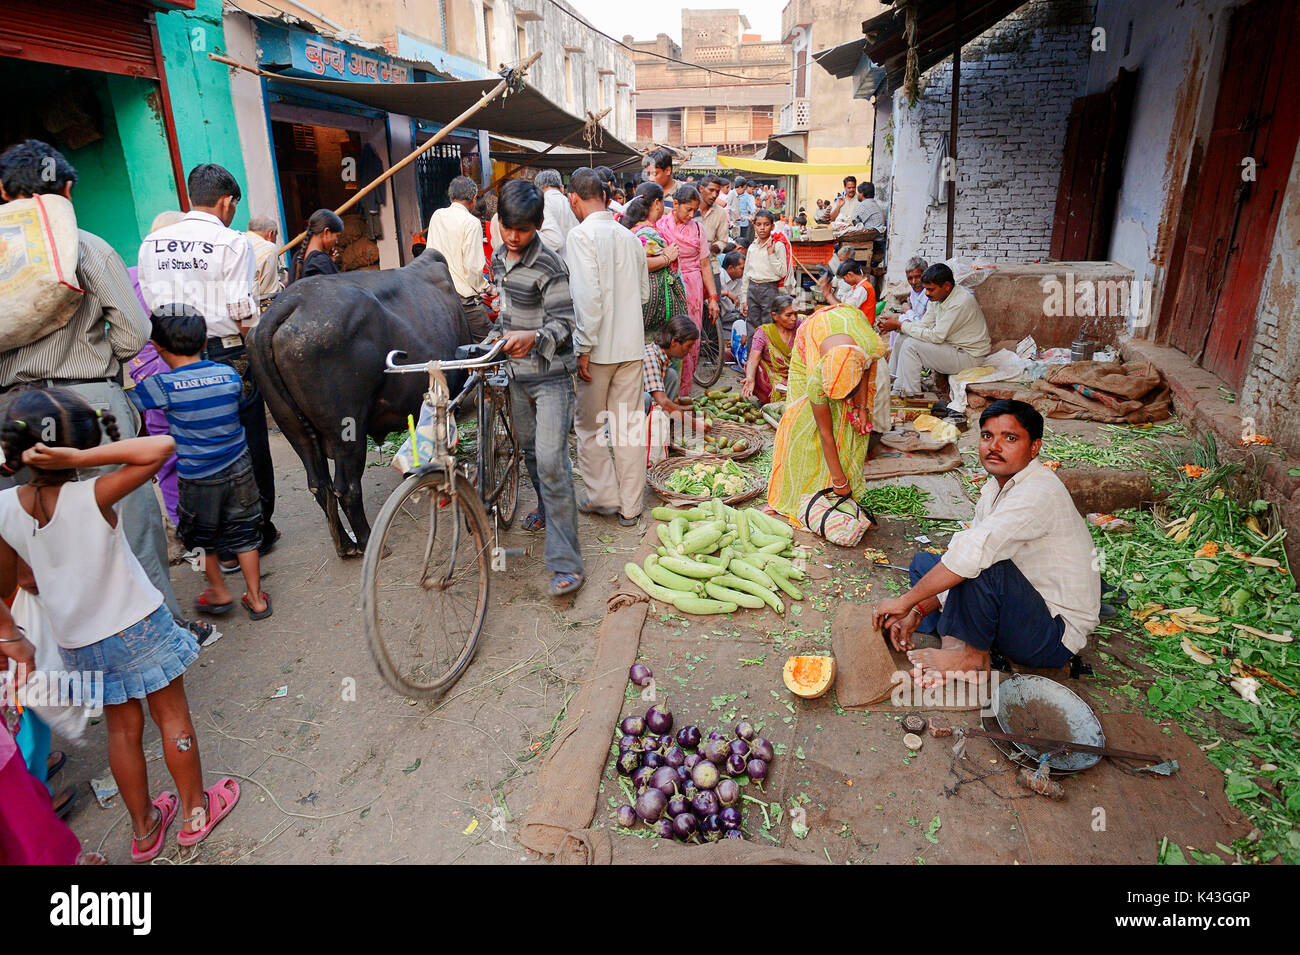 Vendeur à l'échoppe de marché aux légumes, Bharatpur, Rajasthan, Inde | Marktstand mit Gemuese, Bharatpur, Rajasthan, Indien Banque D'Images